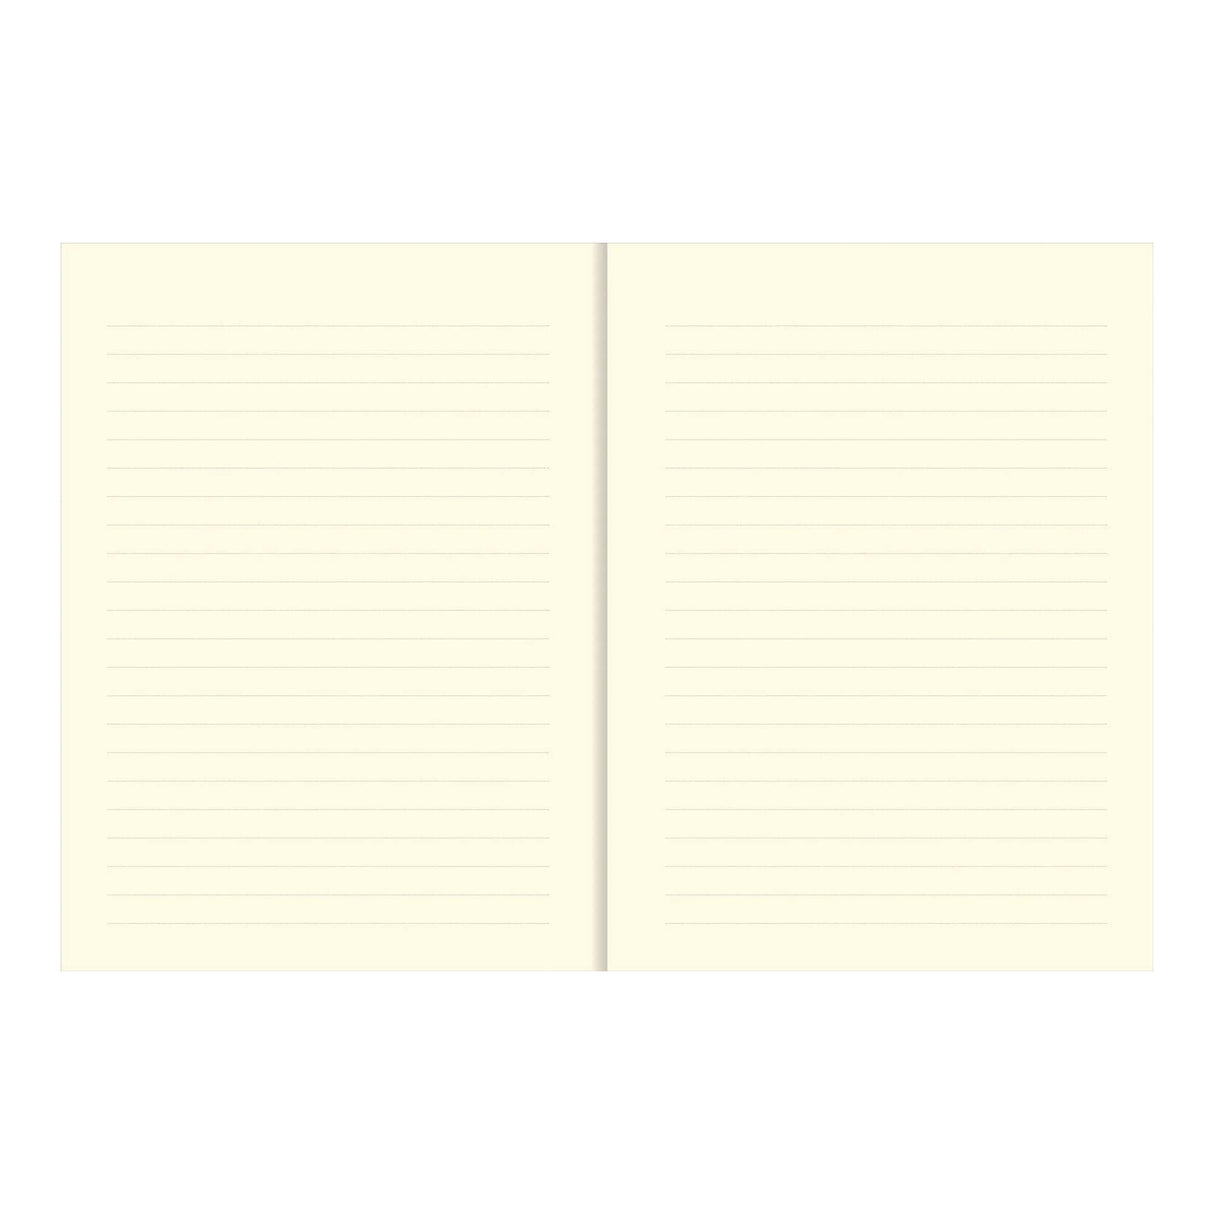 Hummingbird Journal Notebook - Lined